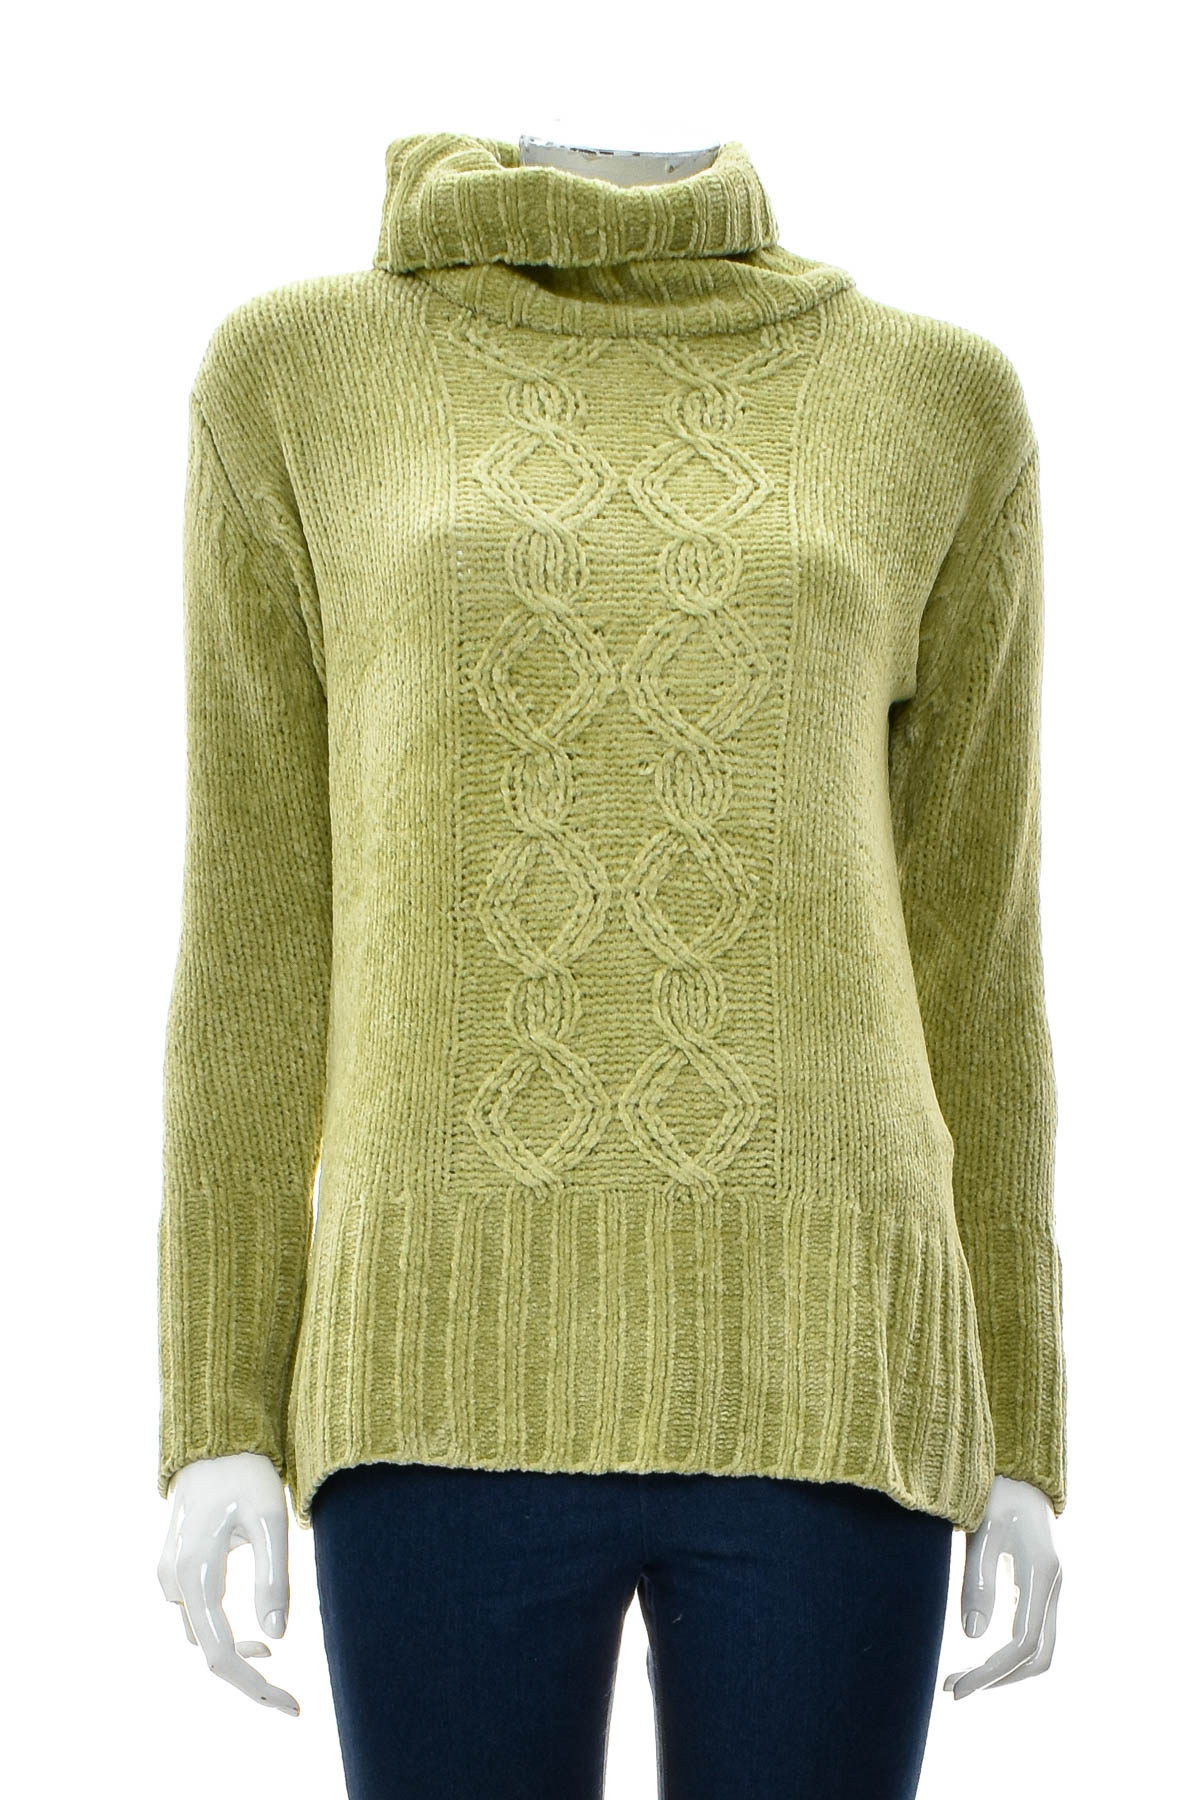 Women's sweater - Yoors - 0